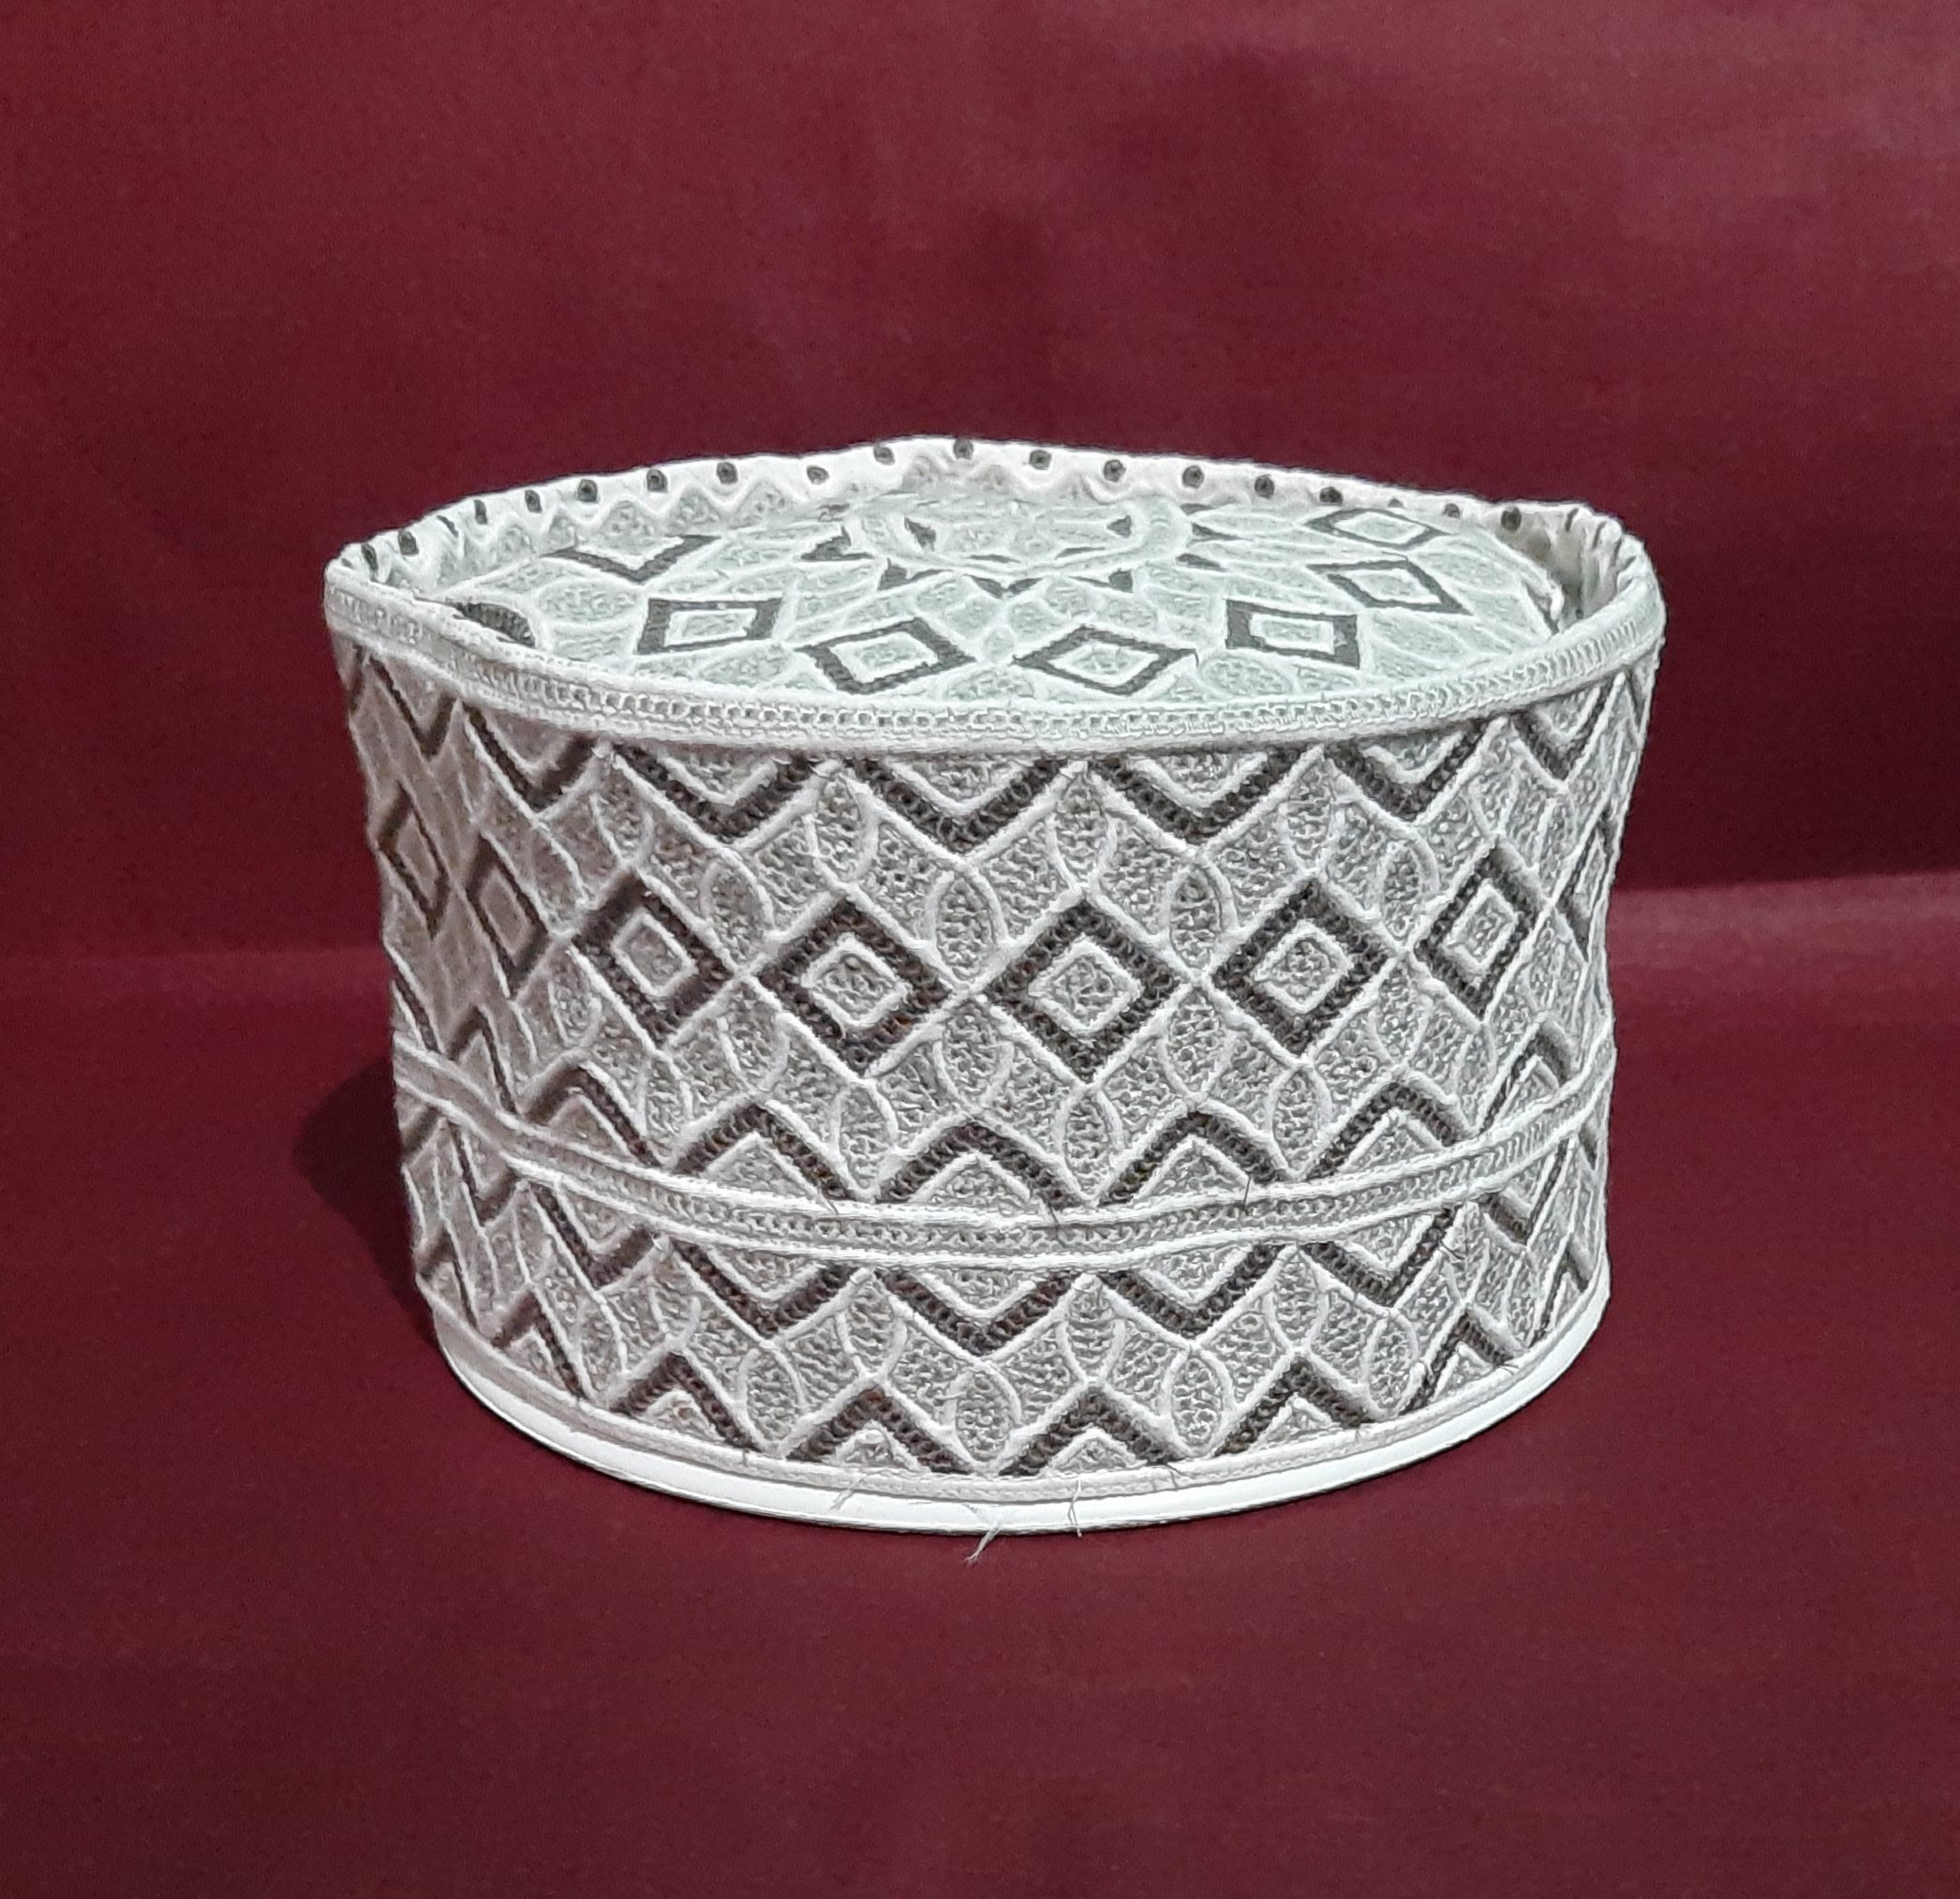 New Original Omani Barkati Cap Soft Cotton Material modal no. 106 Size 21 (Barkati Topi)